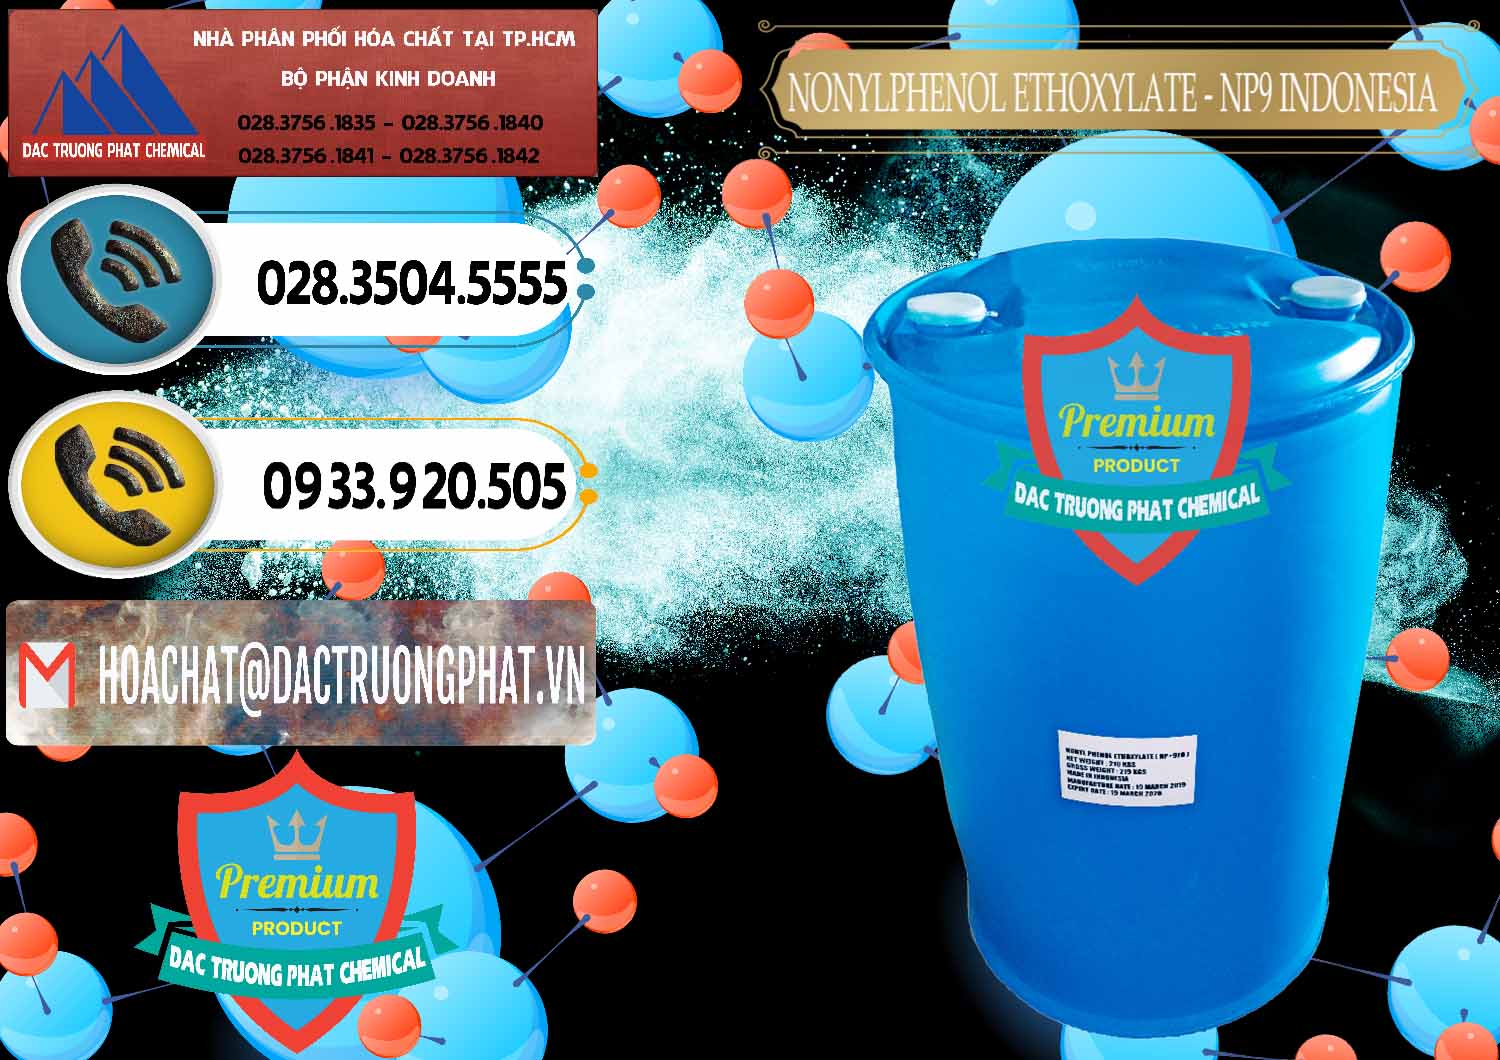 Chuyên bán & cung cấp NP9 - Nonyl Phenol Ethoxylate Indonesia - 0317 - Cty chuyên kinh doanh _ cung cấp hóa chất tại TP.HCM - hoachatdetnhuom.vn